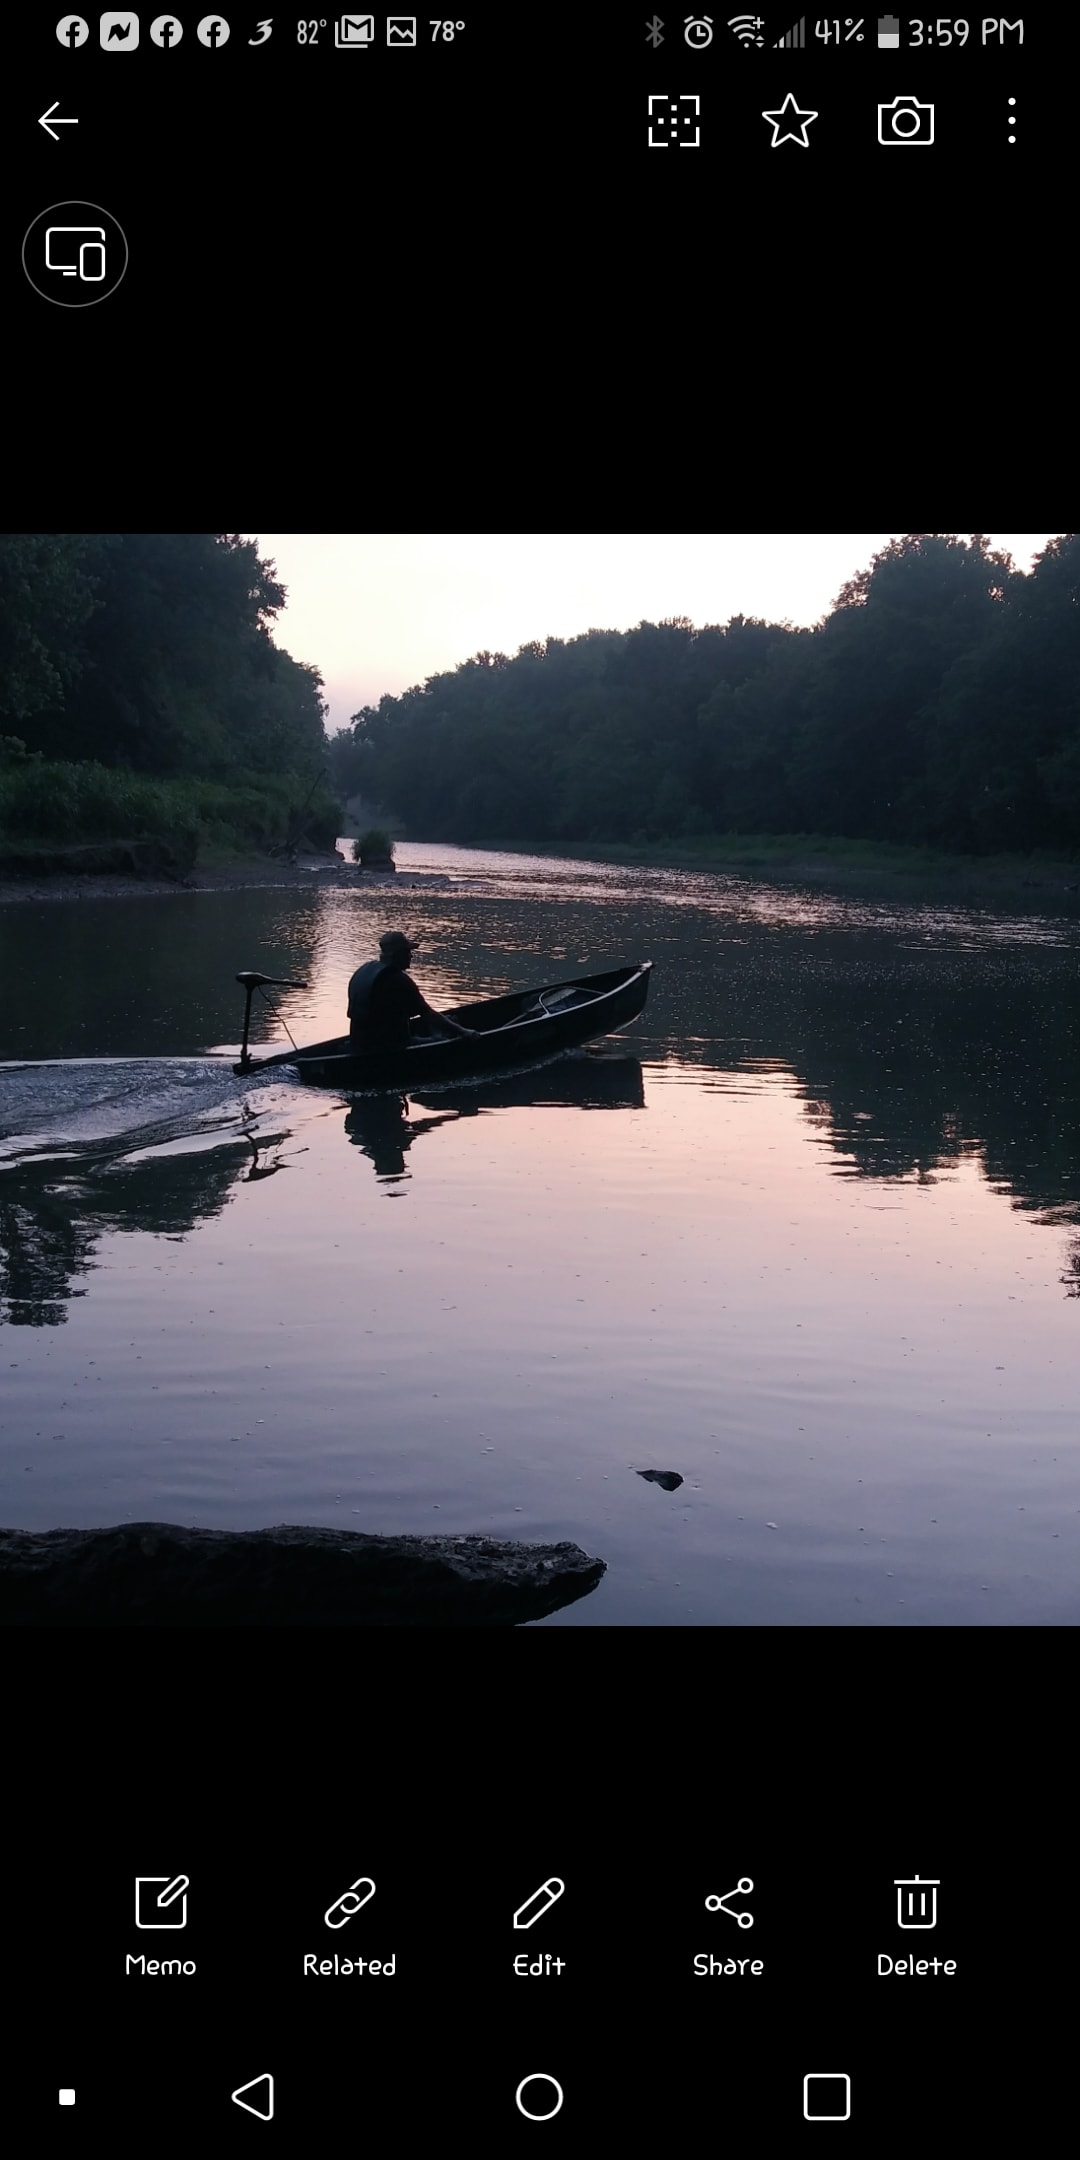 Sunset fishing on Barren river